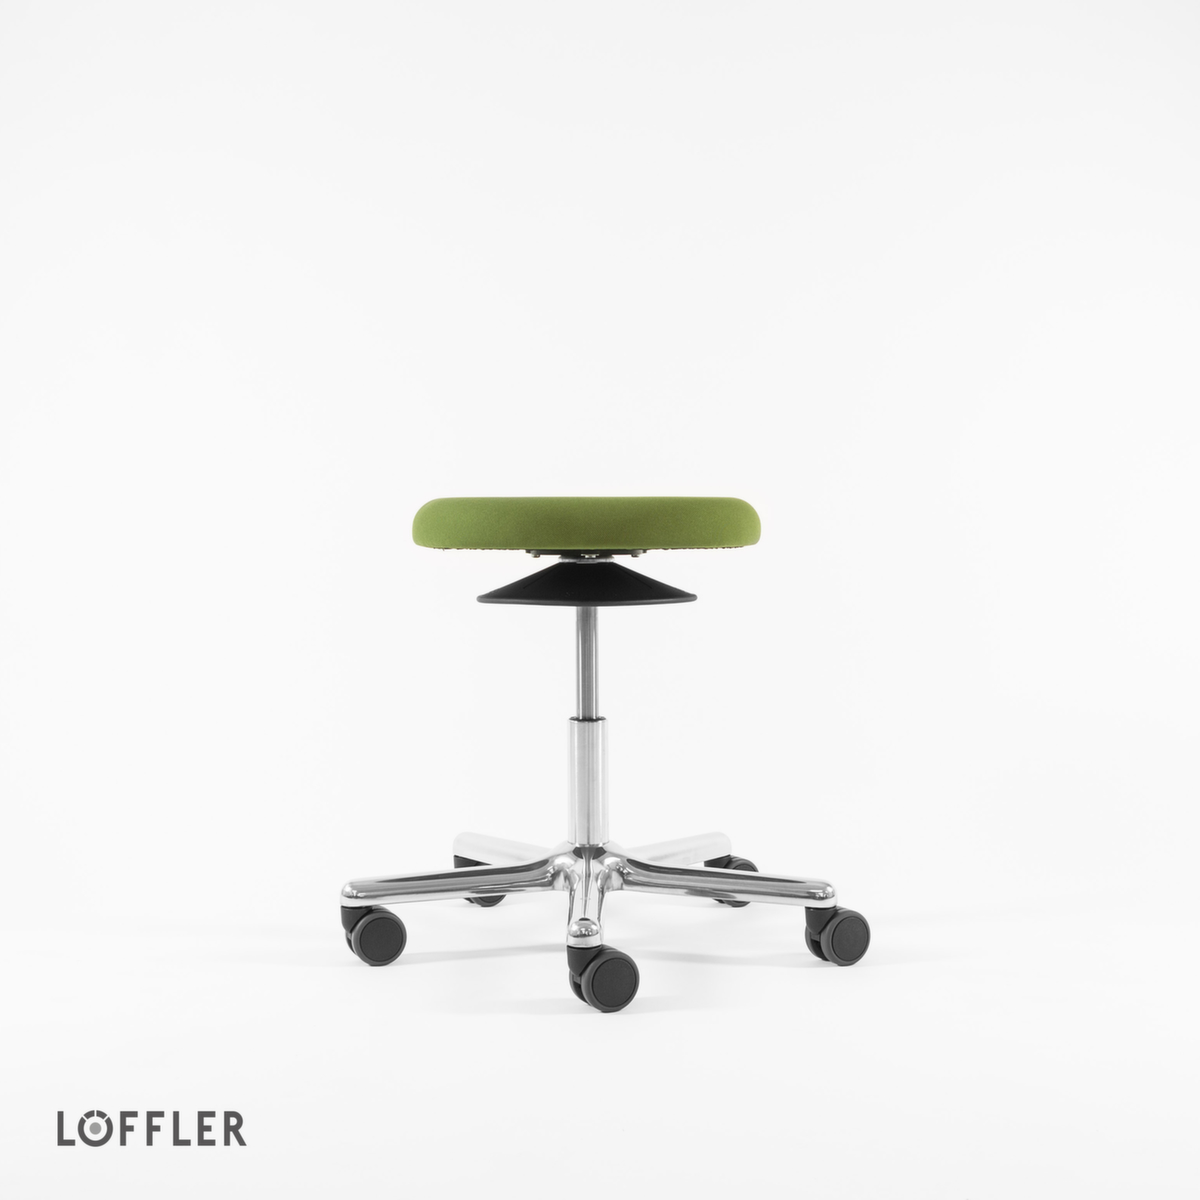 Löffler Drehhocker Ergo mit Sitzhöhenverstellung, Sitz grün, Rollen Standard 2 ZOOM